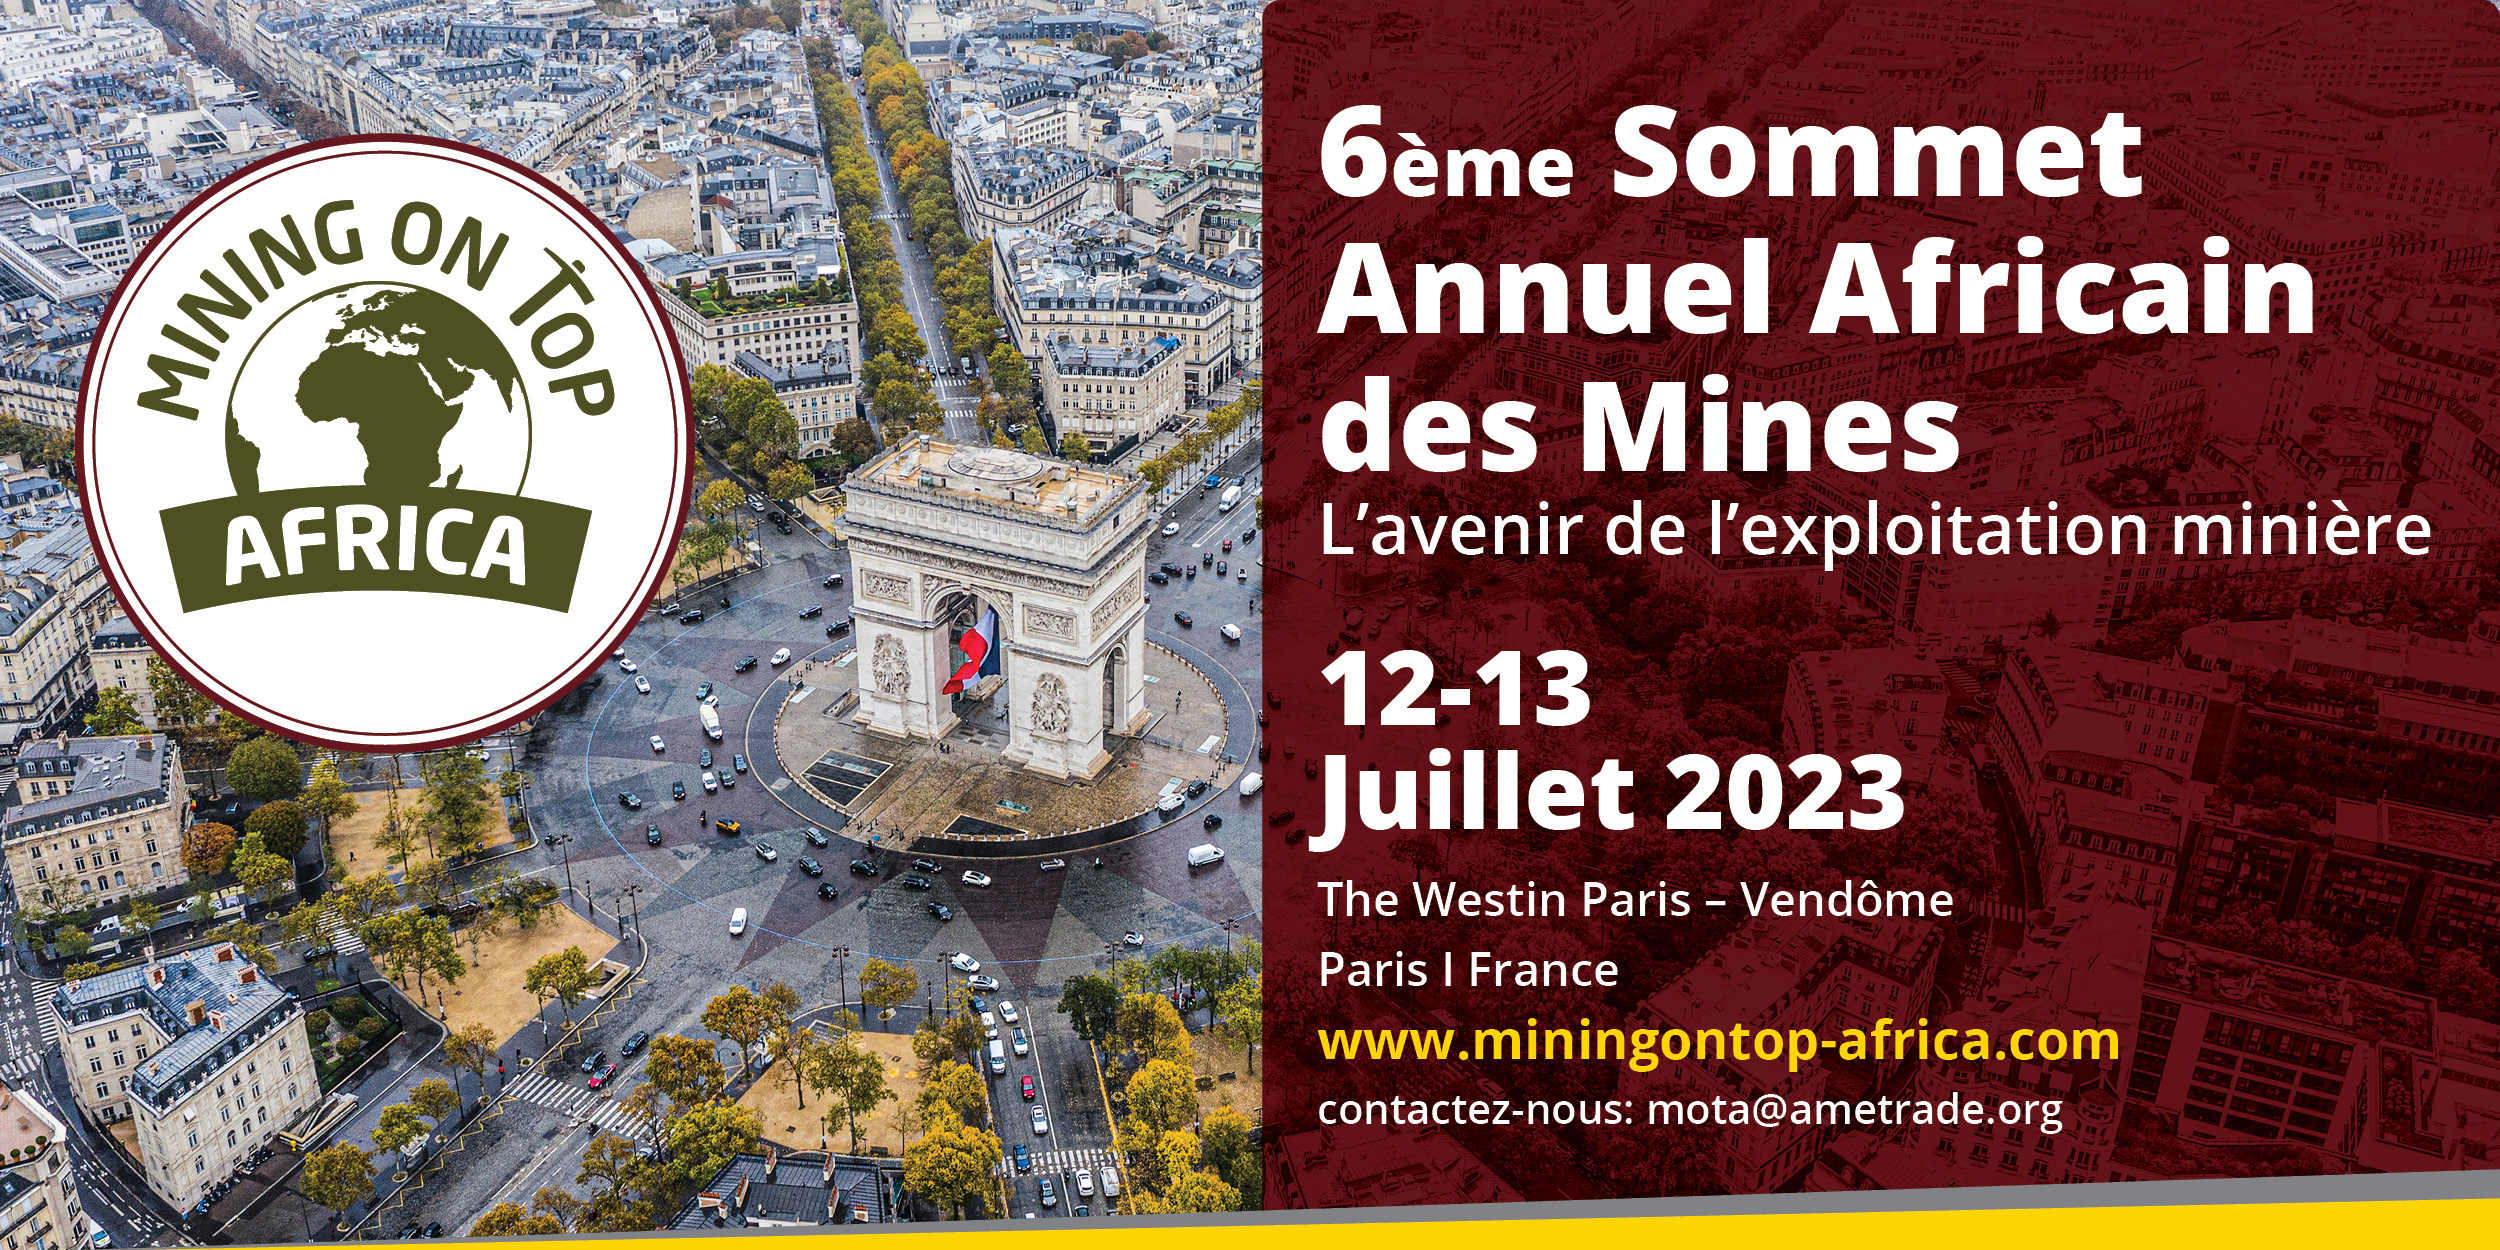 Rendez-vous dans un mois à Paris lors du Sommet des Mines africaines !!!